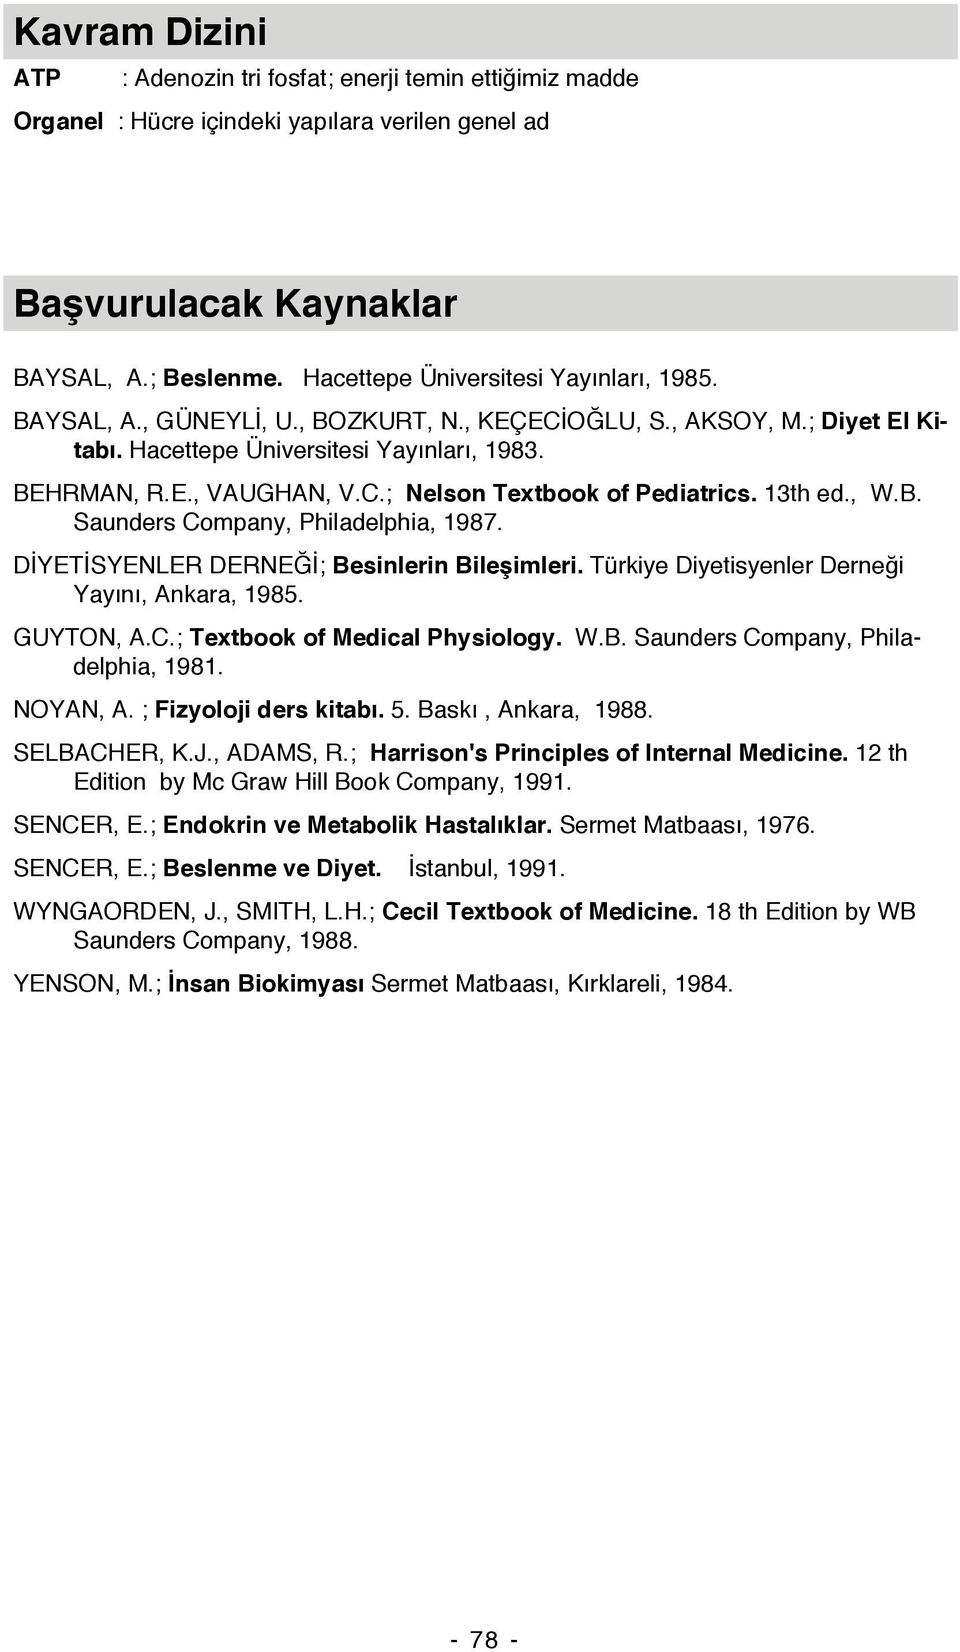 13th ed., W.B. Saunders Company, Philadelphia, 1987. DİYETİSYENLER DERNEĞİ; Besinlerin Bileşimleri. Türkiye Diyetisyenler Derneği Yayını, Ankara, 1985. GUYTON, A.C.; Textbook of Medical Physiology. W.B. Saunders Company, Philadelphia, 1981.